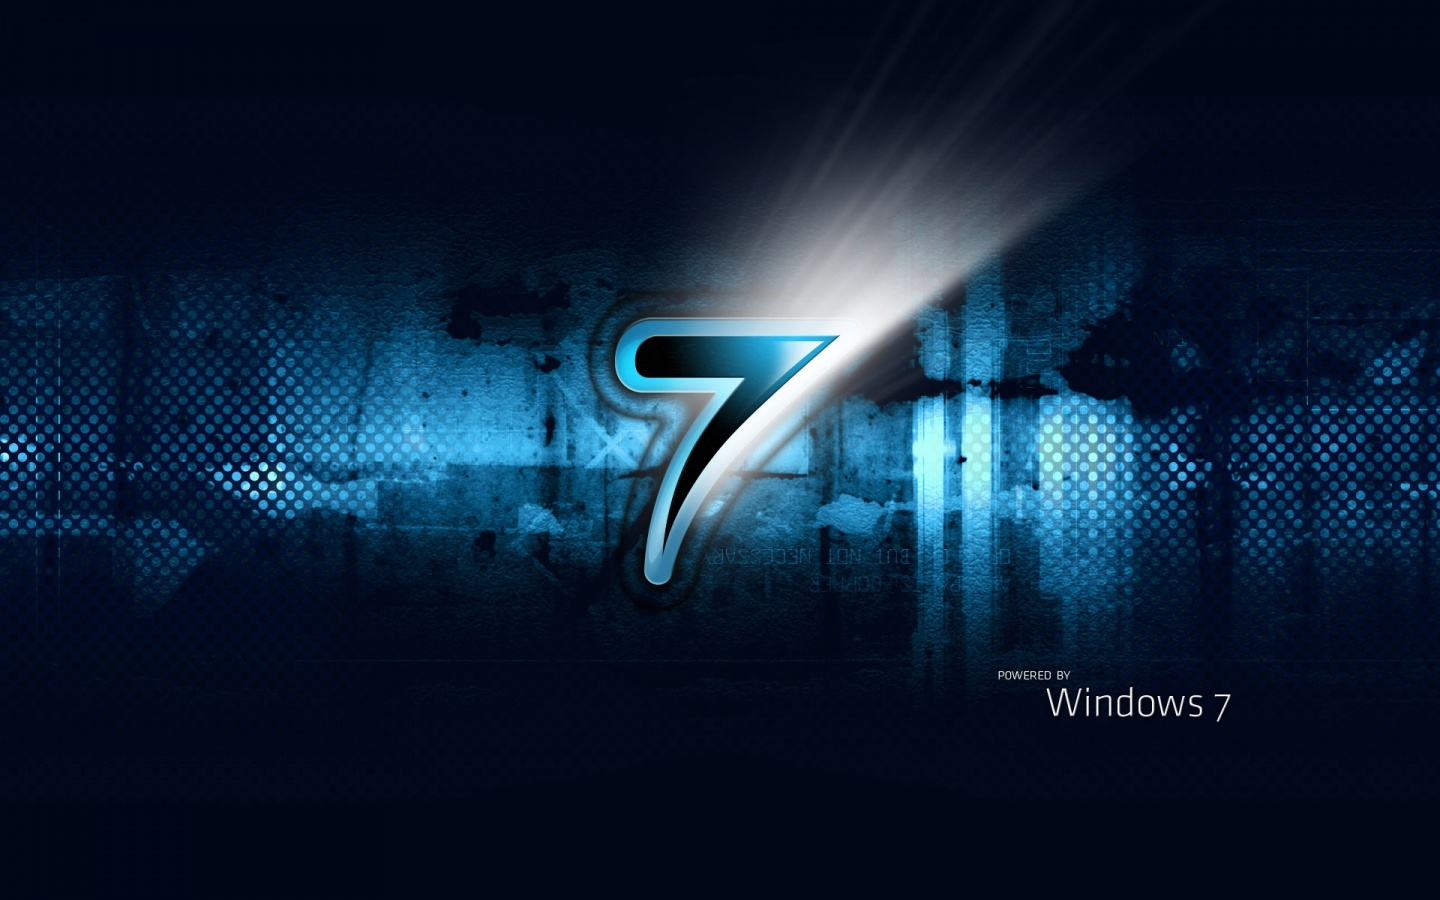 48+] Live Wallpaper Windows 7 Ultimate - WallpaperSafari